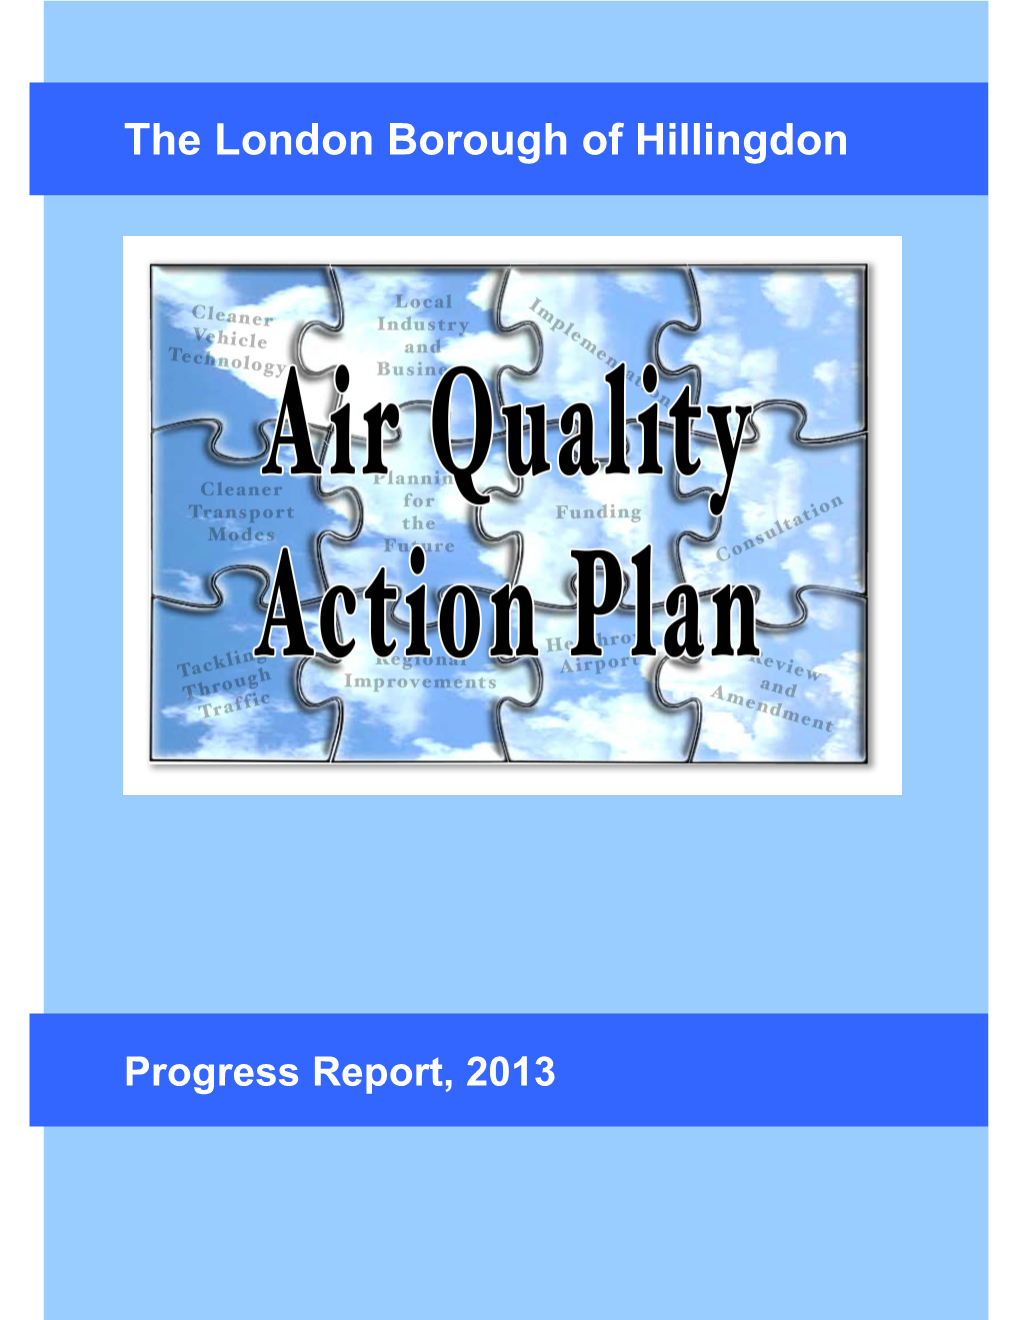 AQAP Progress Report 2013